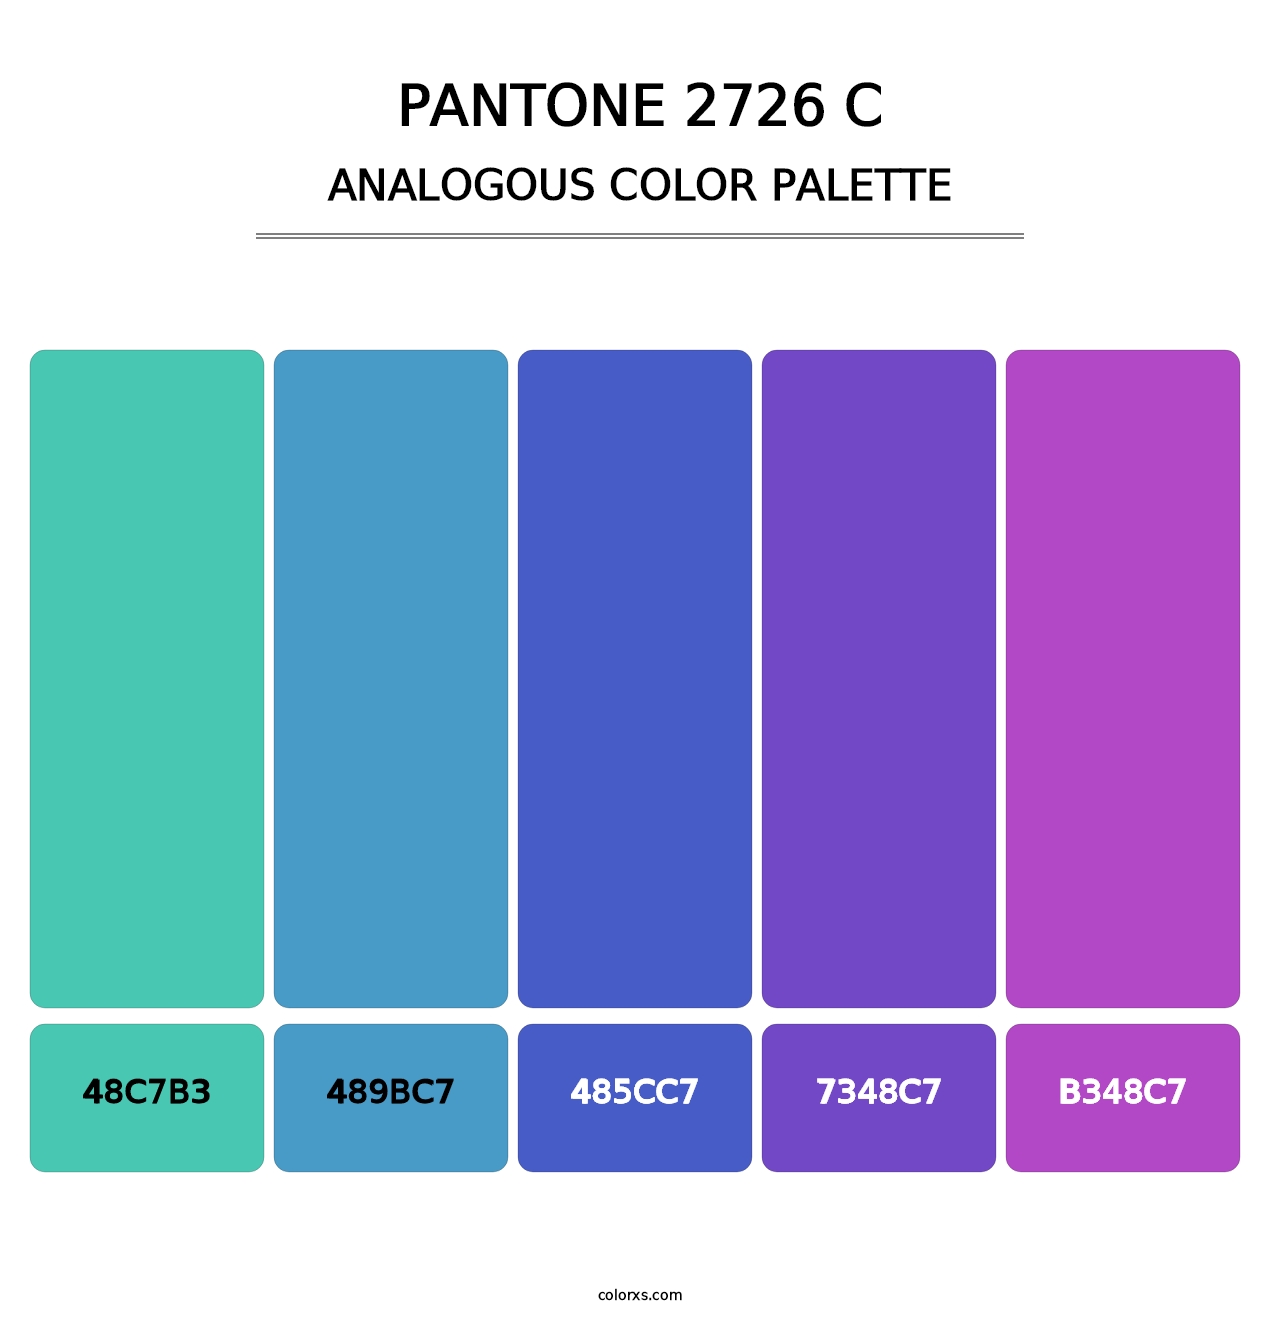 PANTONE 2726 C - Analogous Color Palette